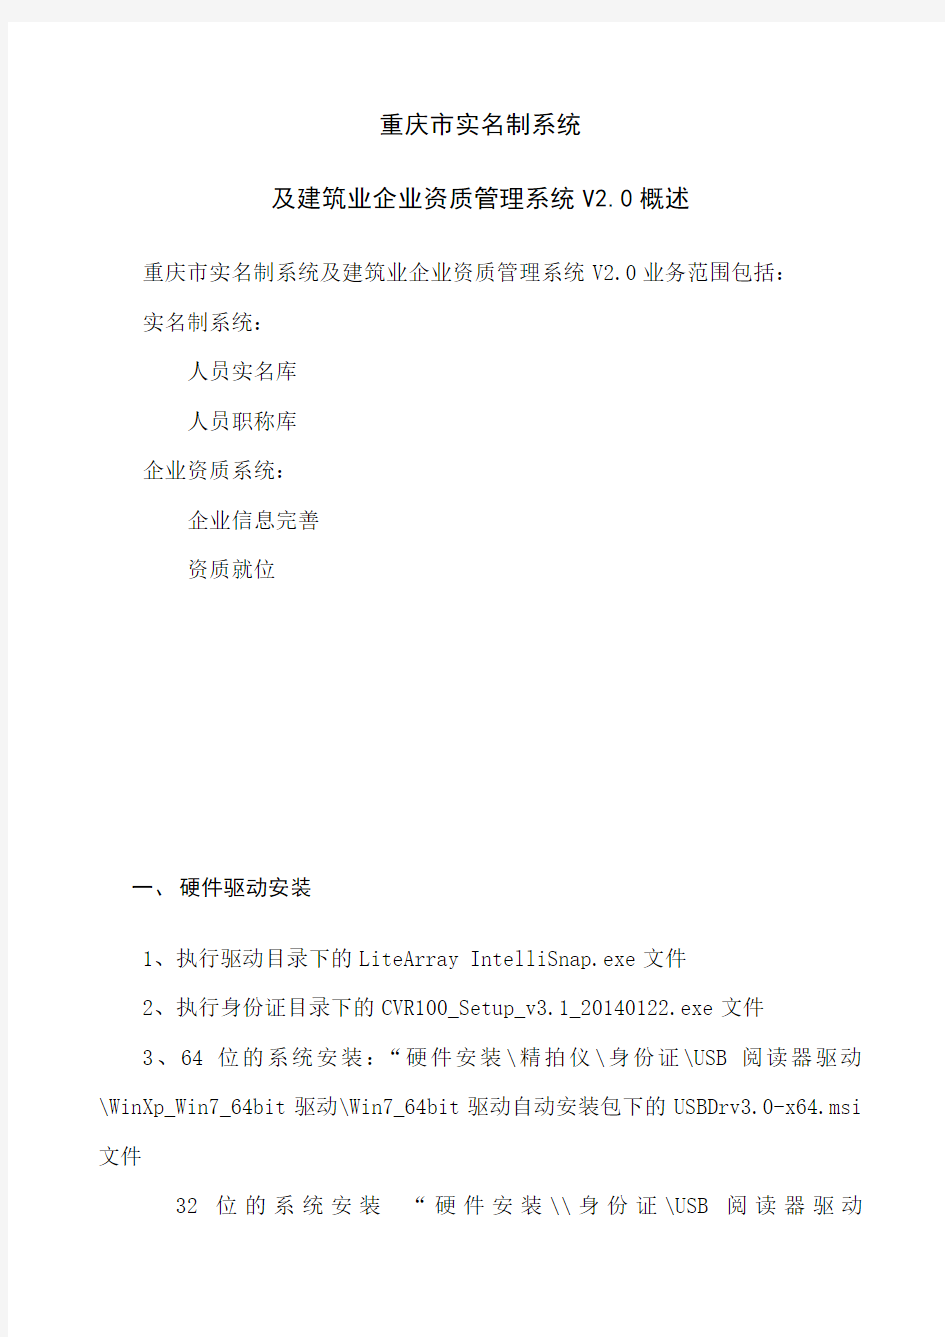 重庆市建筑业企业资质管理系统V2.0(使用说明)